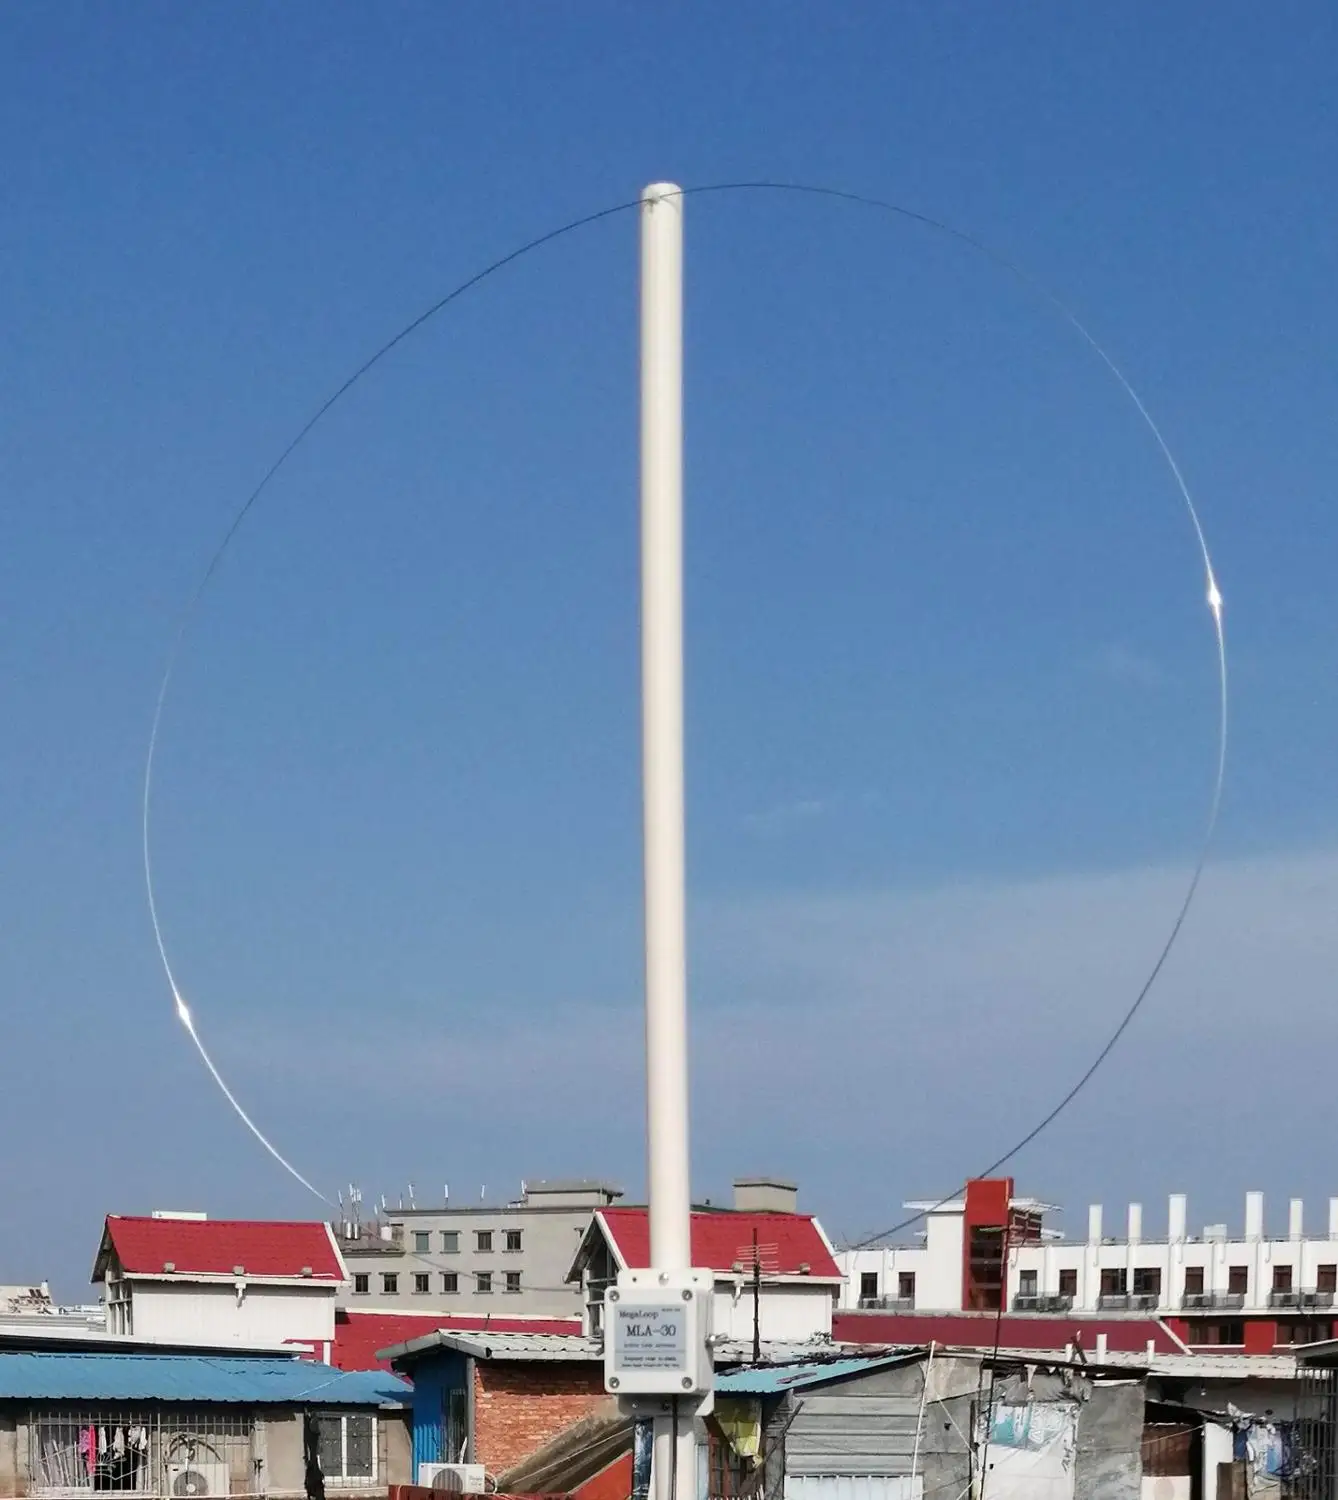 MLA-30 активная Рамочная антенна активная приемная антенна 100 кГц-30 МГц для средней волны коротковолновой HF Радио